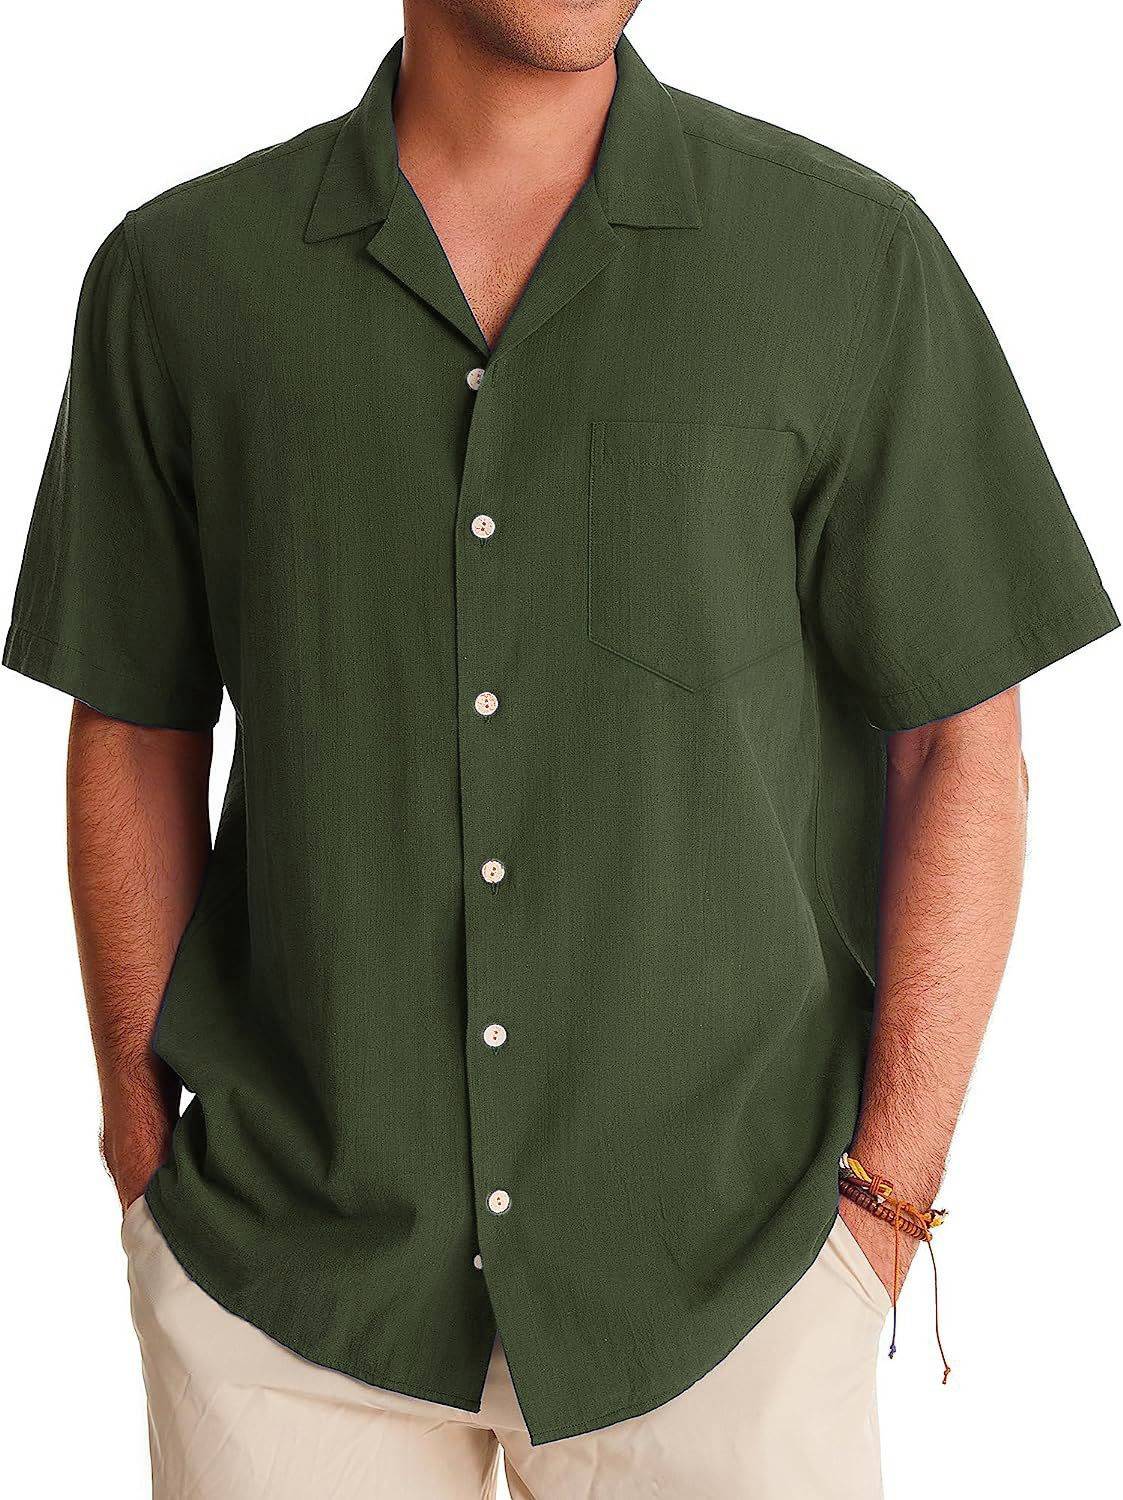 Men's Fashion Casual Cuban Collar Pocket Short Sleeve Shirt-Garamode